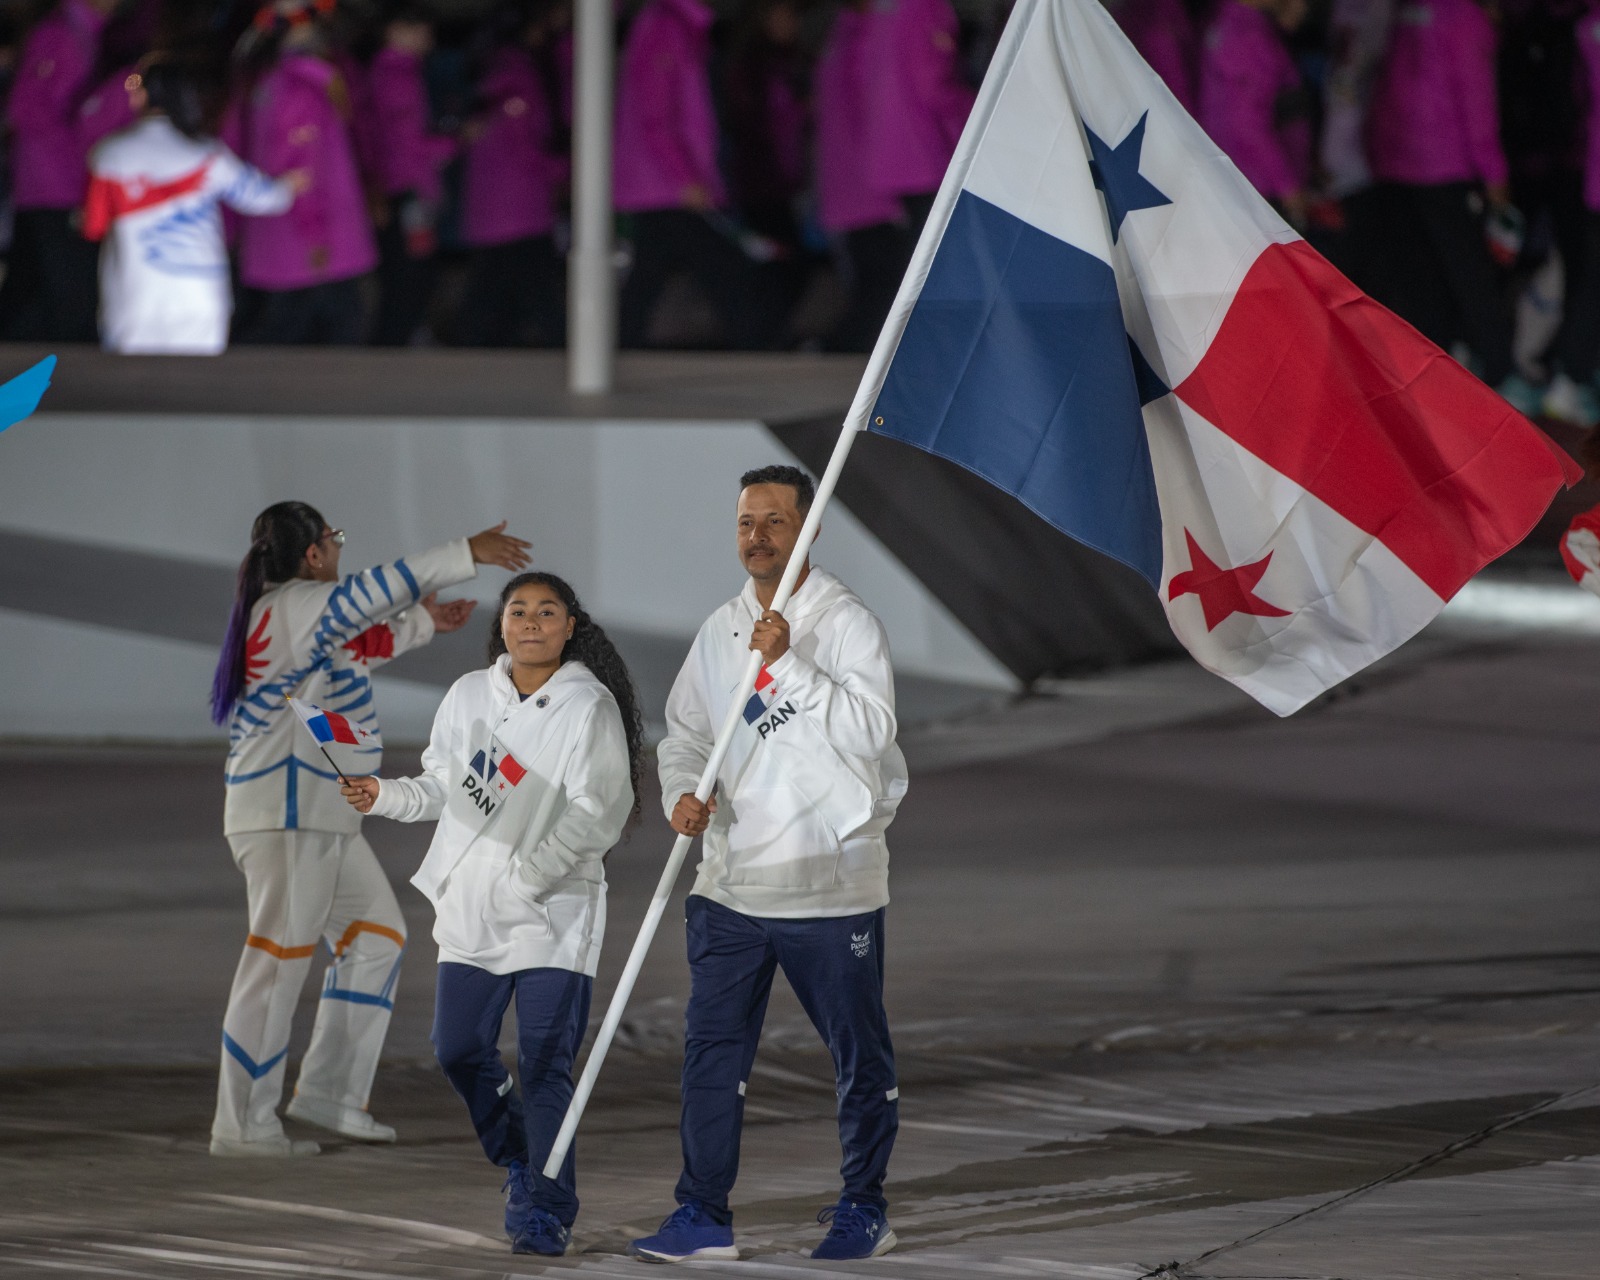 Team Panamá nominado en los PANAM SPORTS AWARDS 2023 en categoría Comité Olímpico Nacional con Mayor Progreso